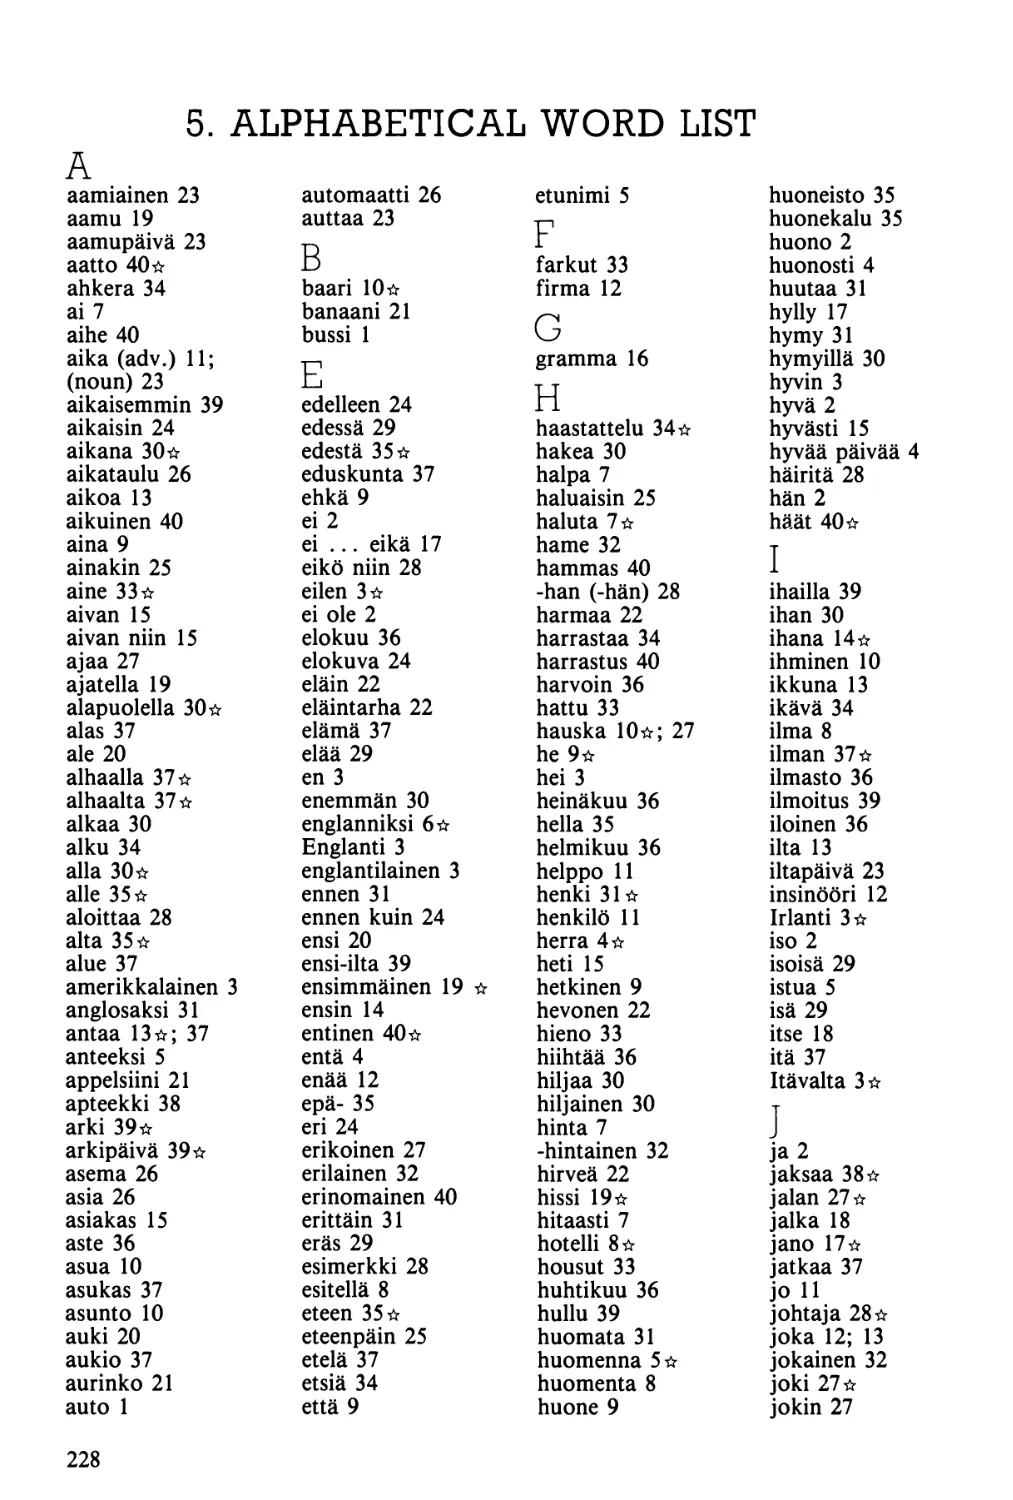 5. Alphabetical word list